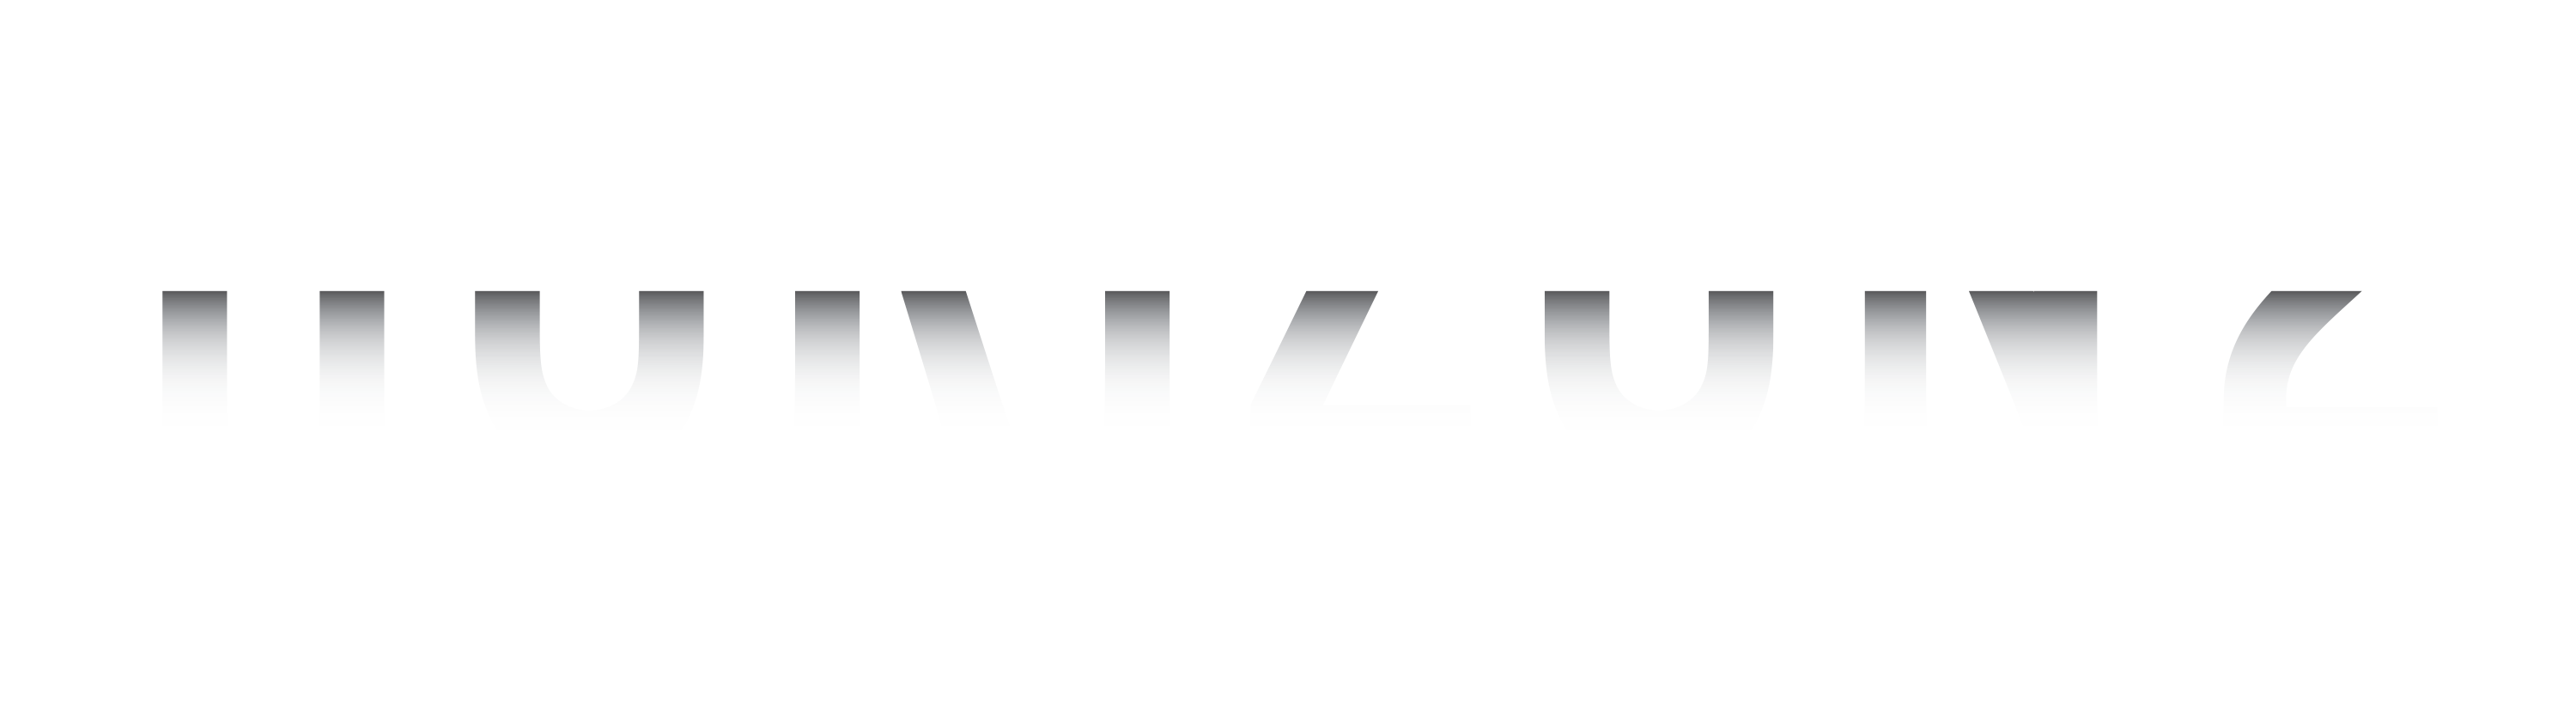 Horizon Two Labs | Venture Studio